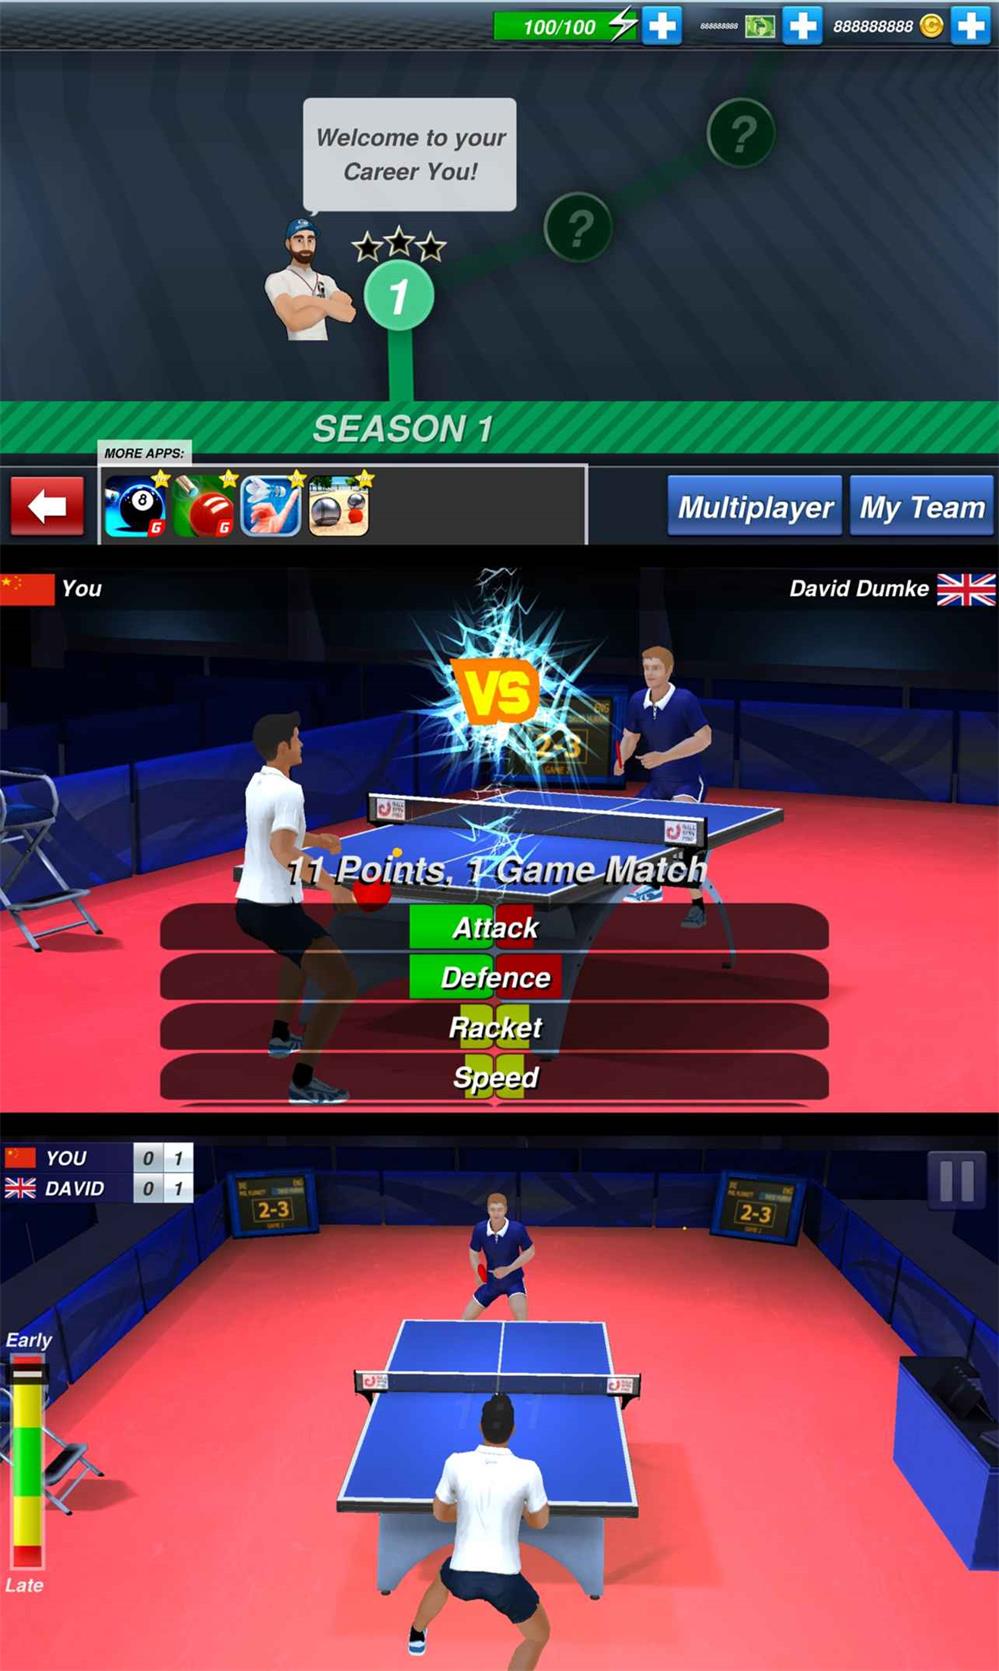 体育竞技游戏 乒乓球冠军赛-小灰兔技术频道